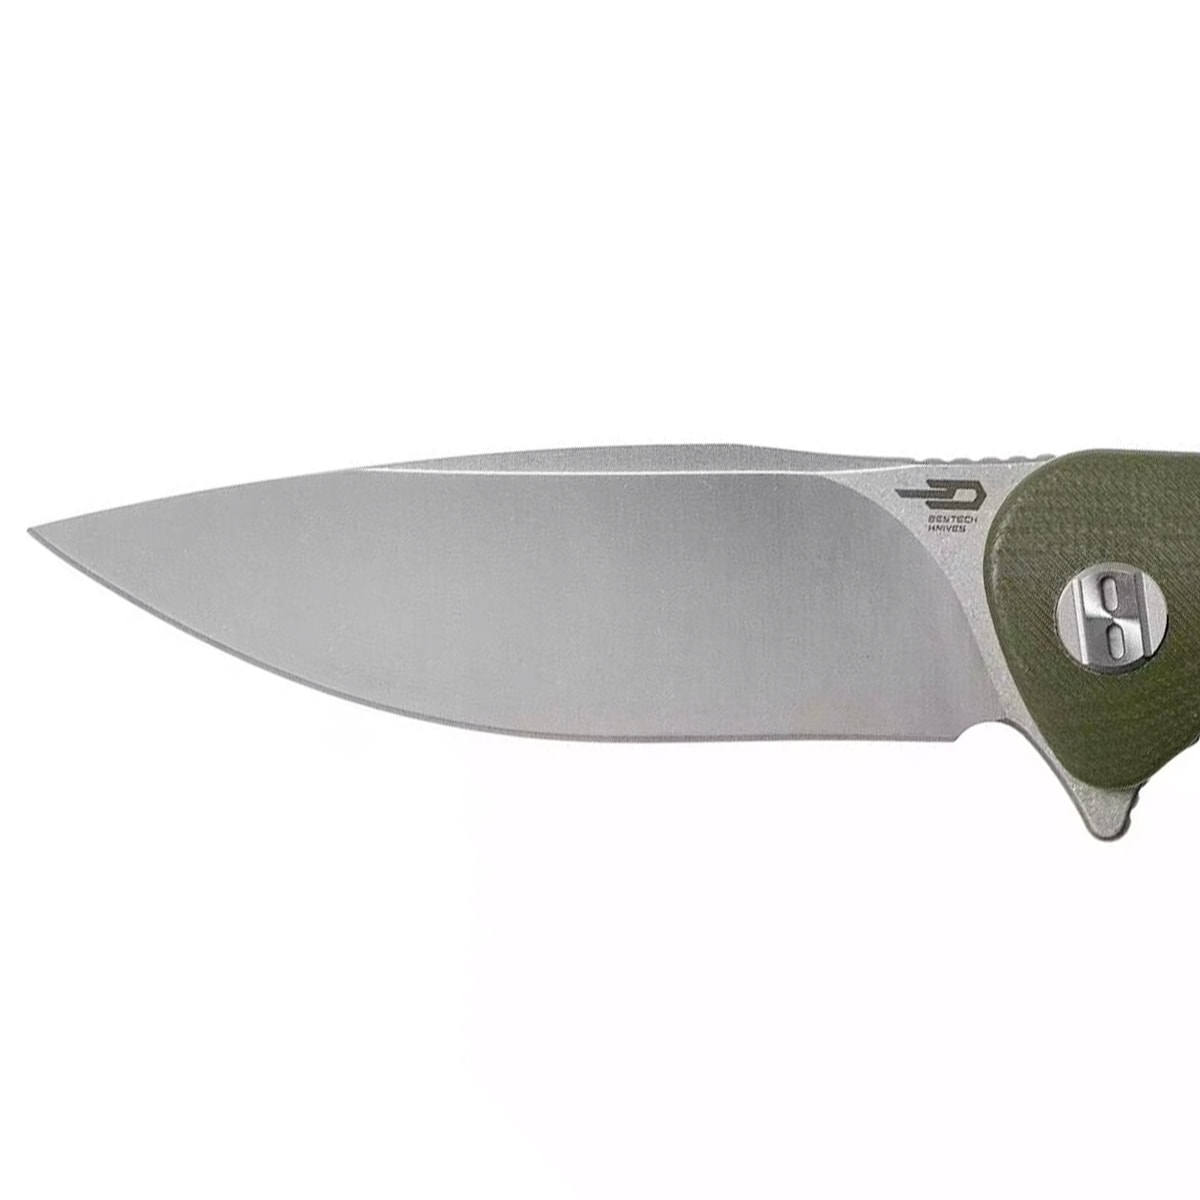 Nóż składany Bestech Knives Bobcat - Olive